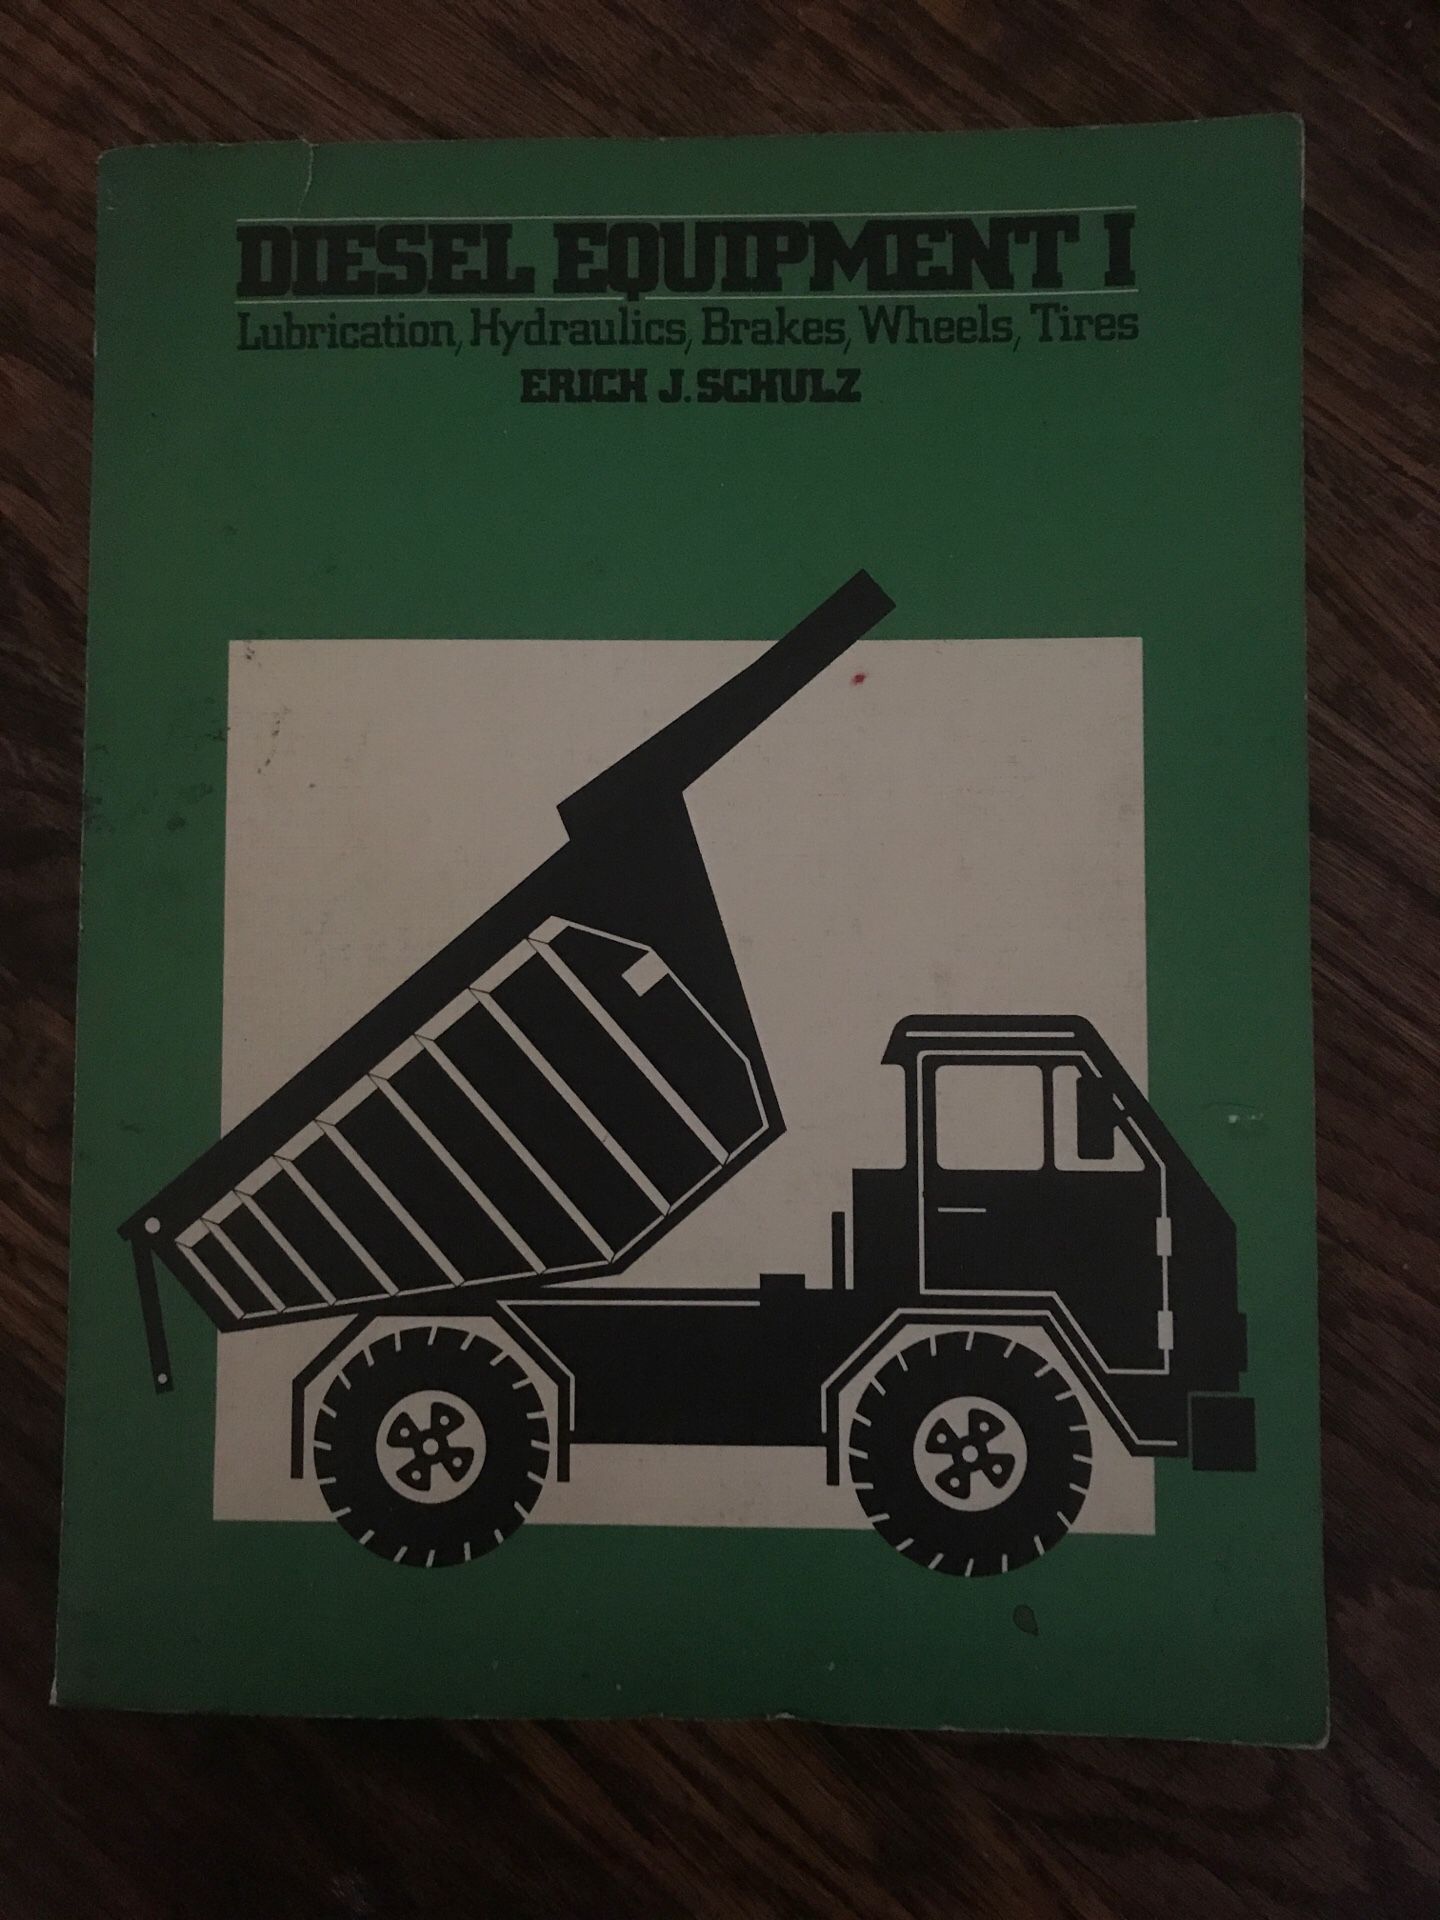 Diesel equipment by Erich j Schulz